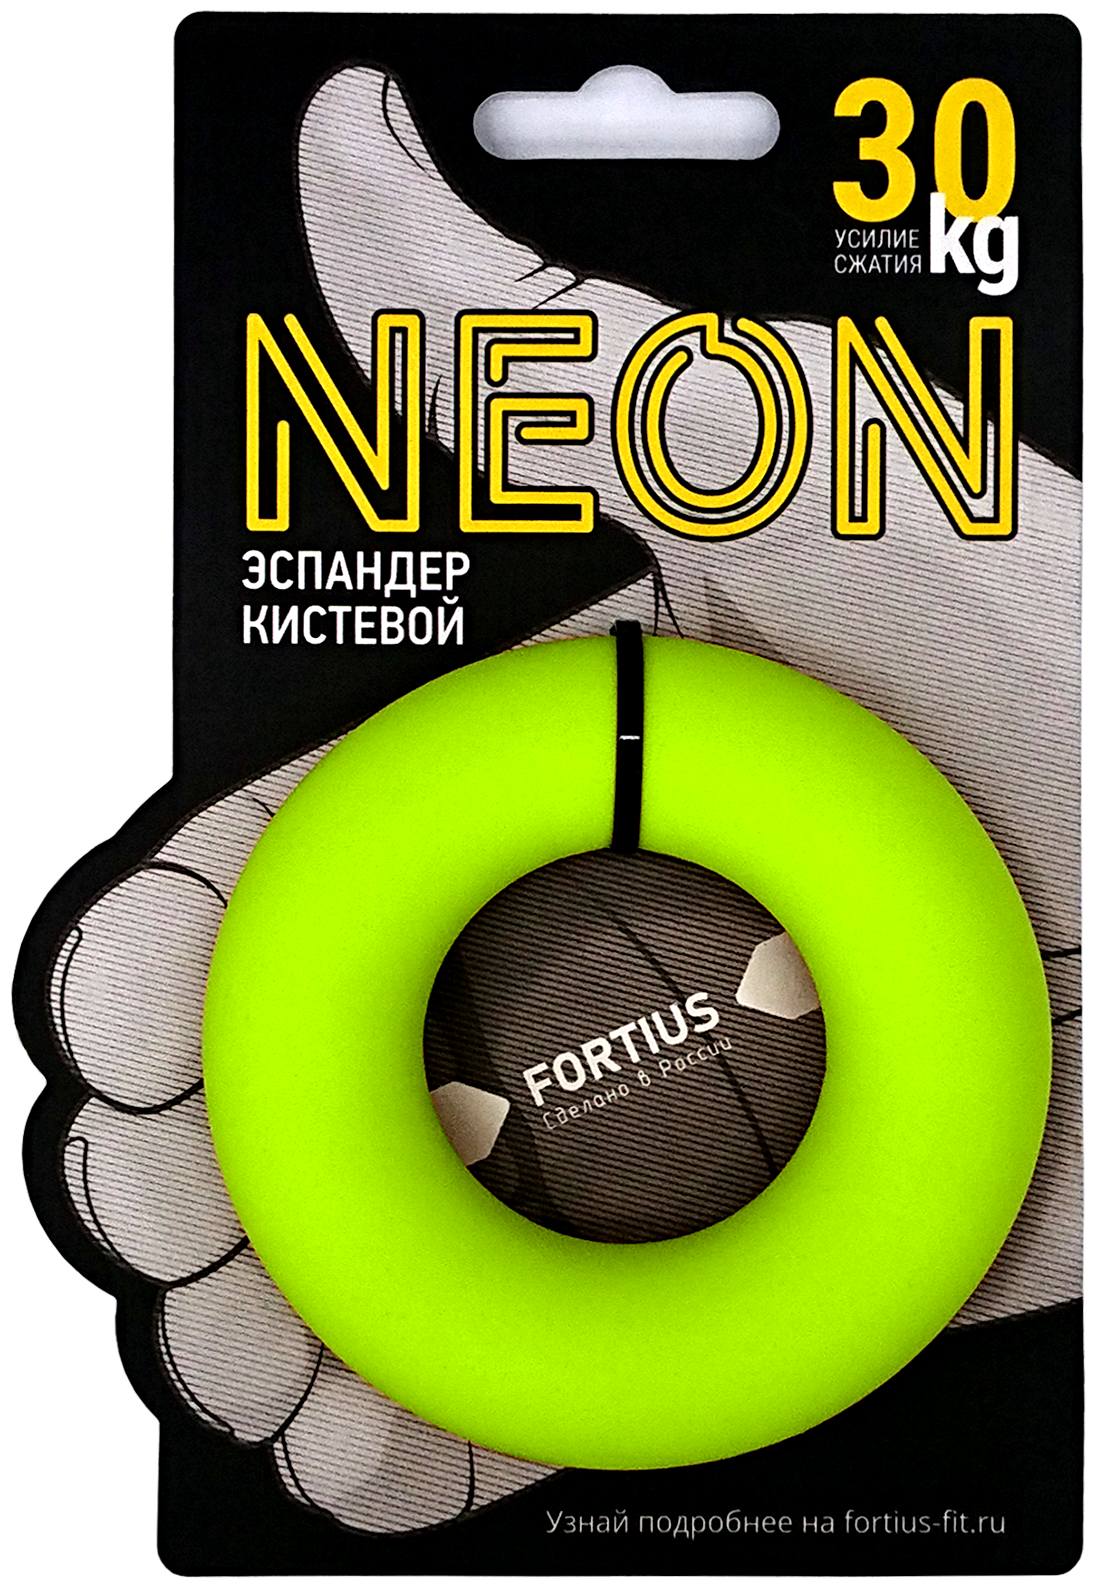 Эспандер кистевой "Fortius" Neon 30 кг.